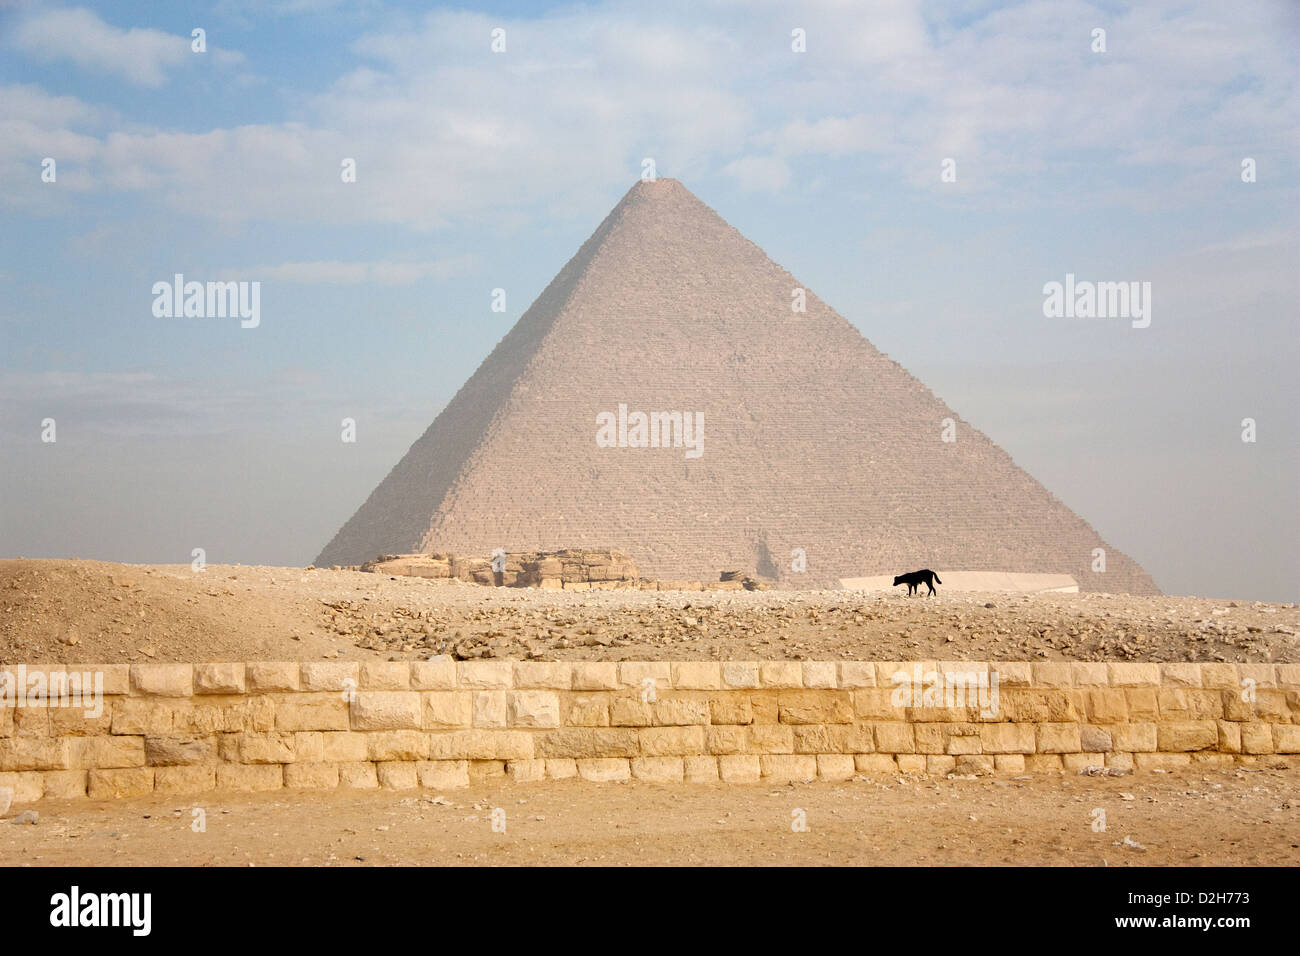 Cairo, Egypt, Great Pyramid of Giza Stock Photo